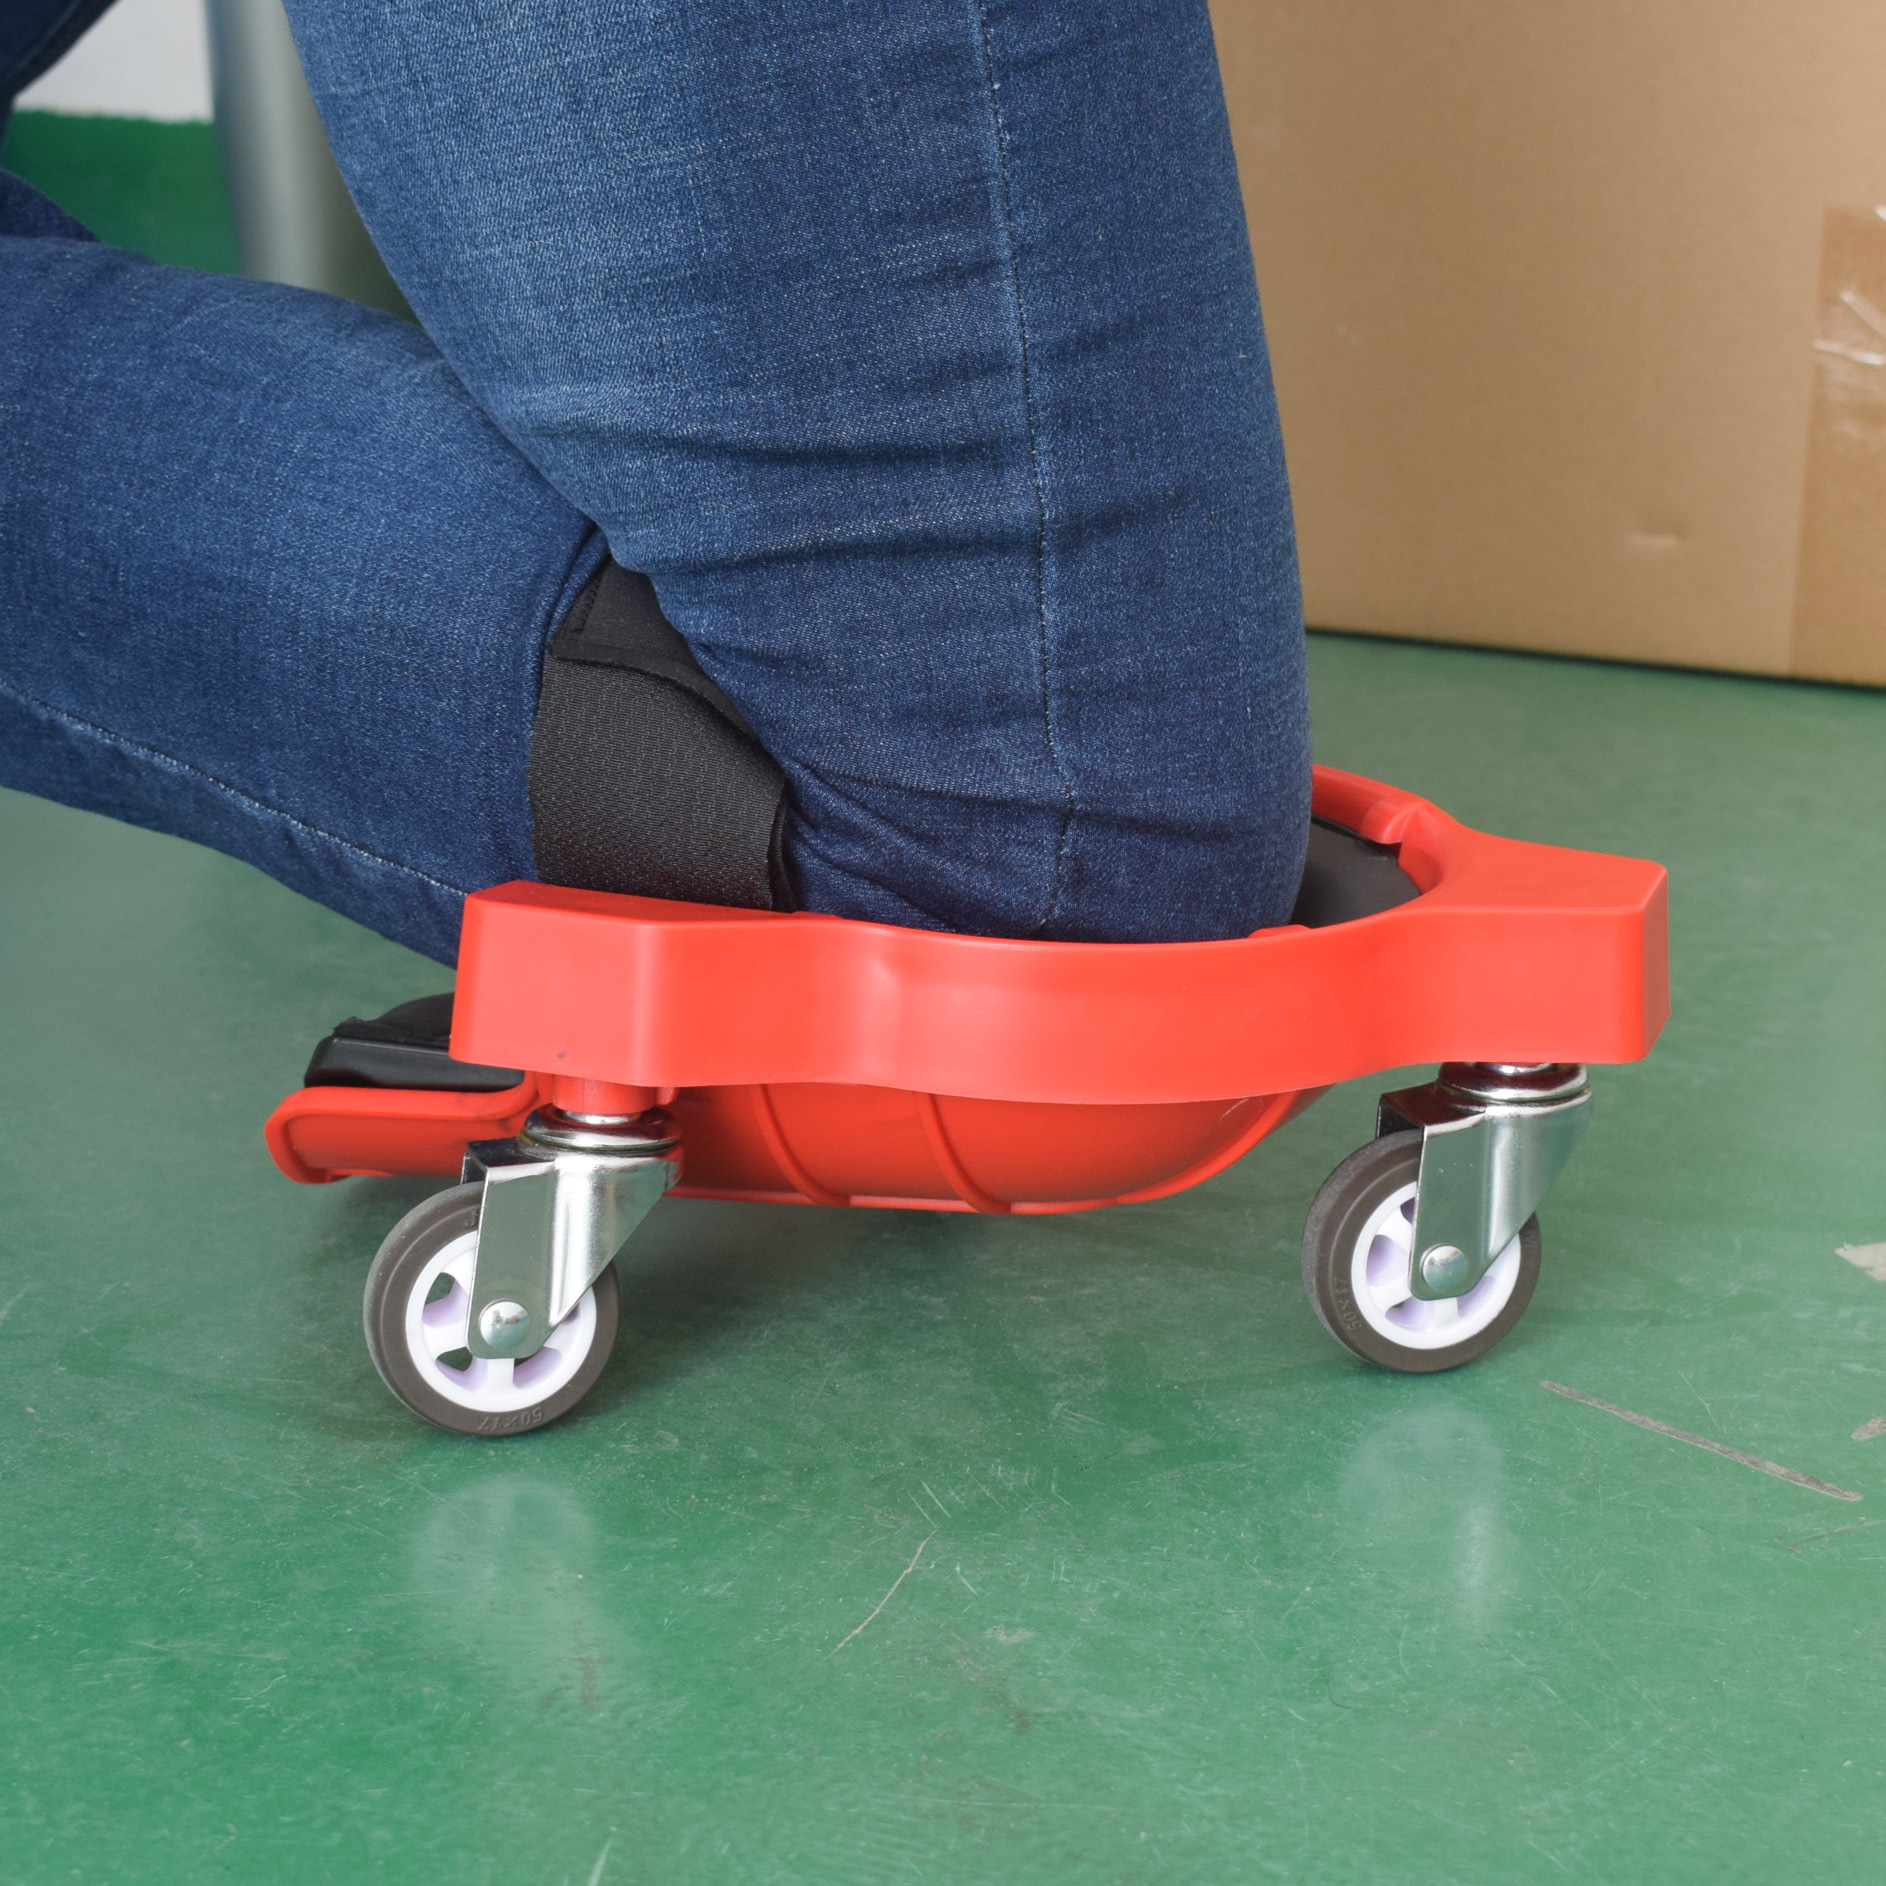 多功能滑动护膝 Rolling Knee Pad 方便省力万向轮移动木工跪垫详情图5